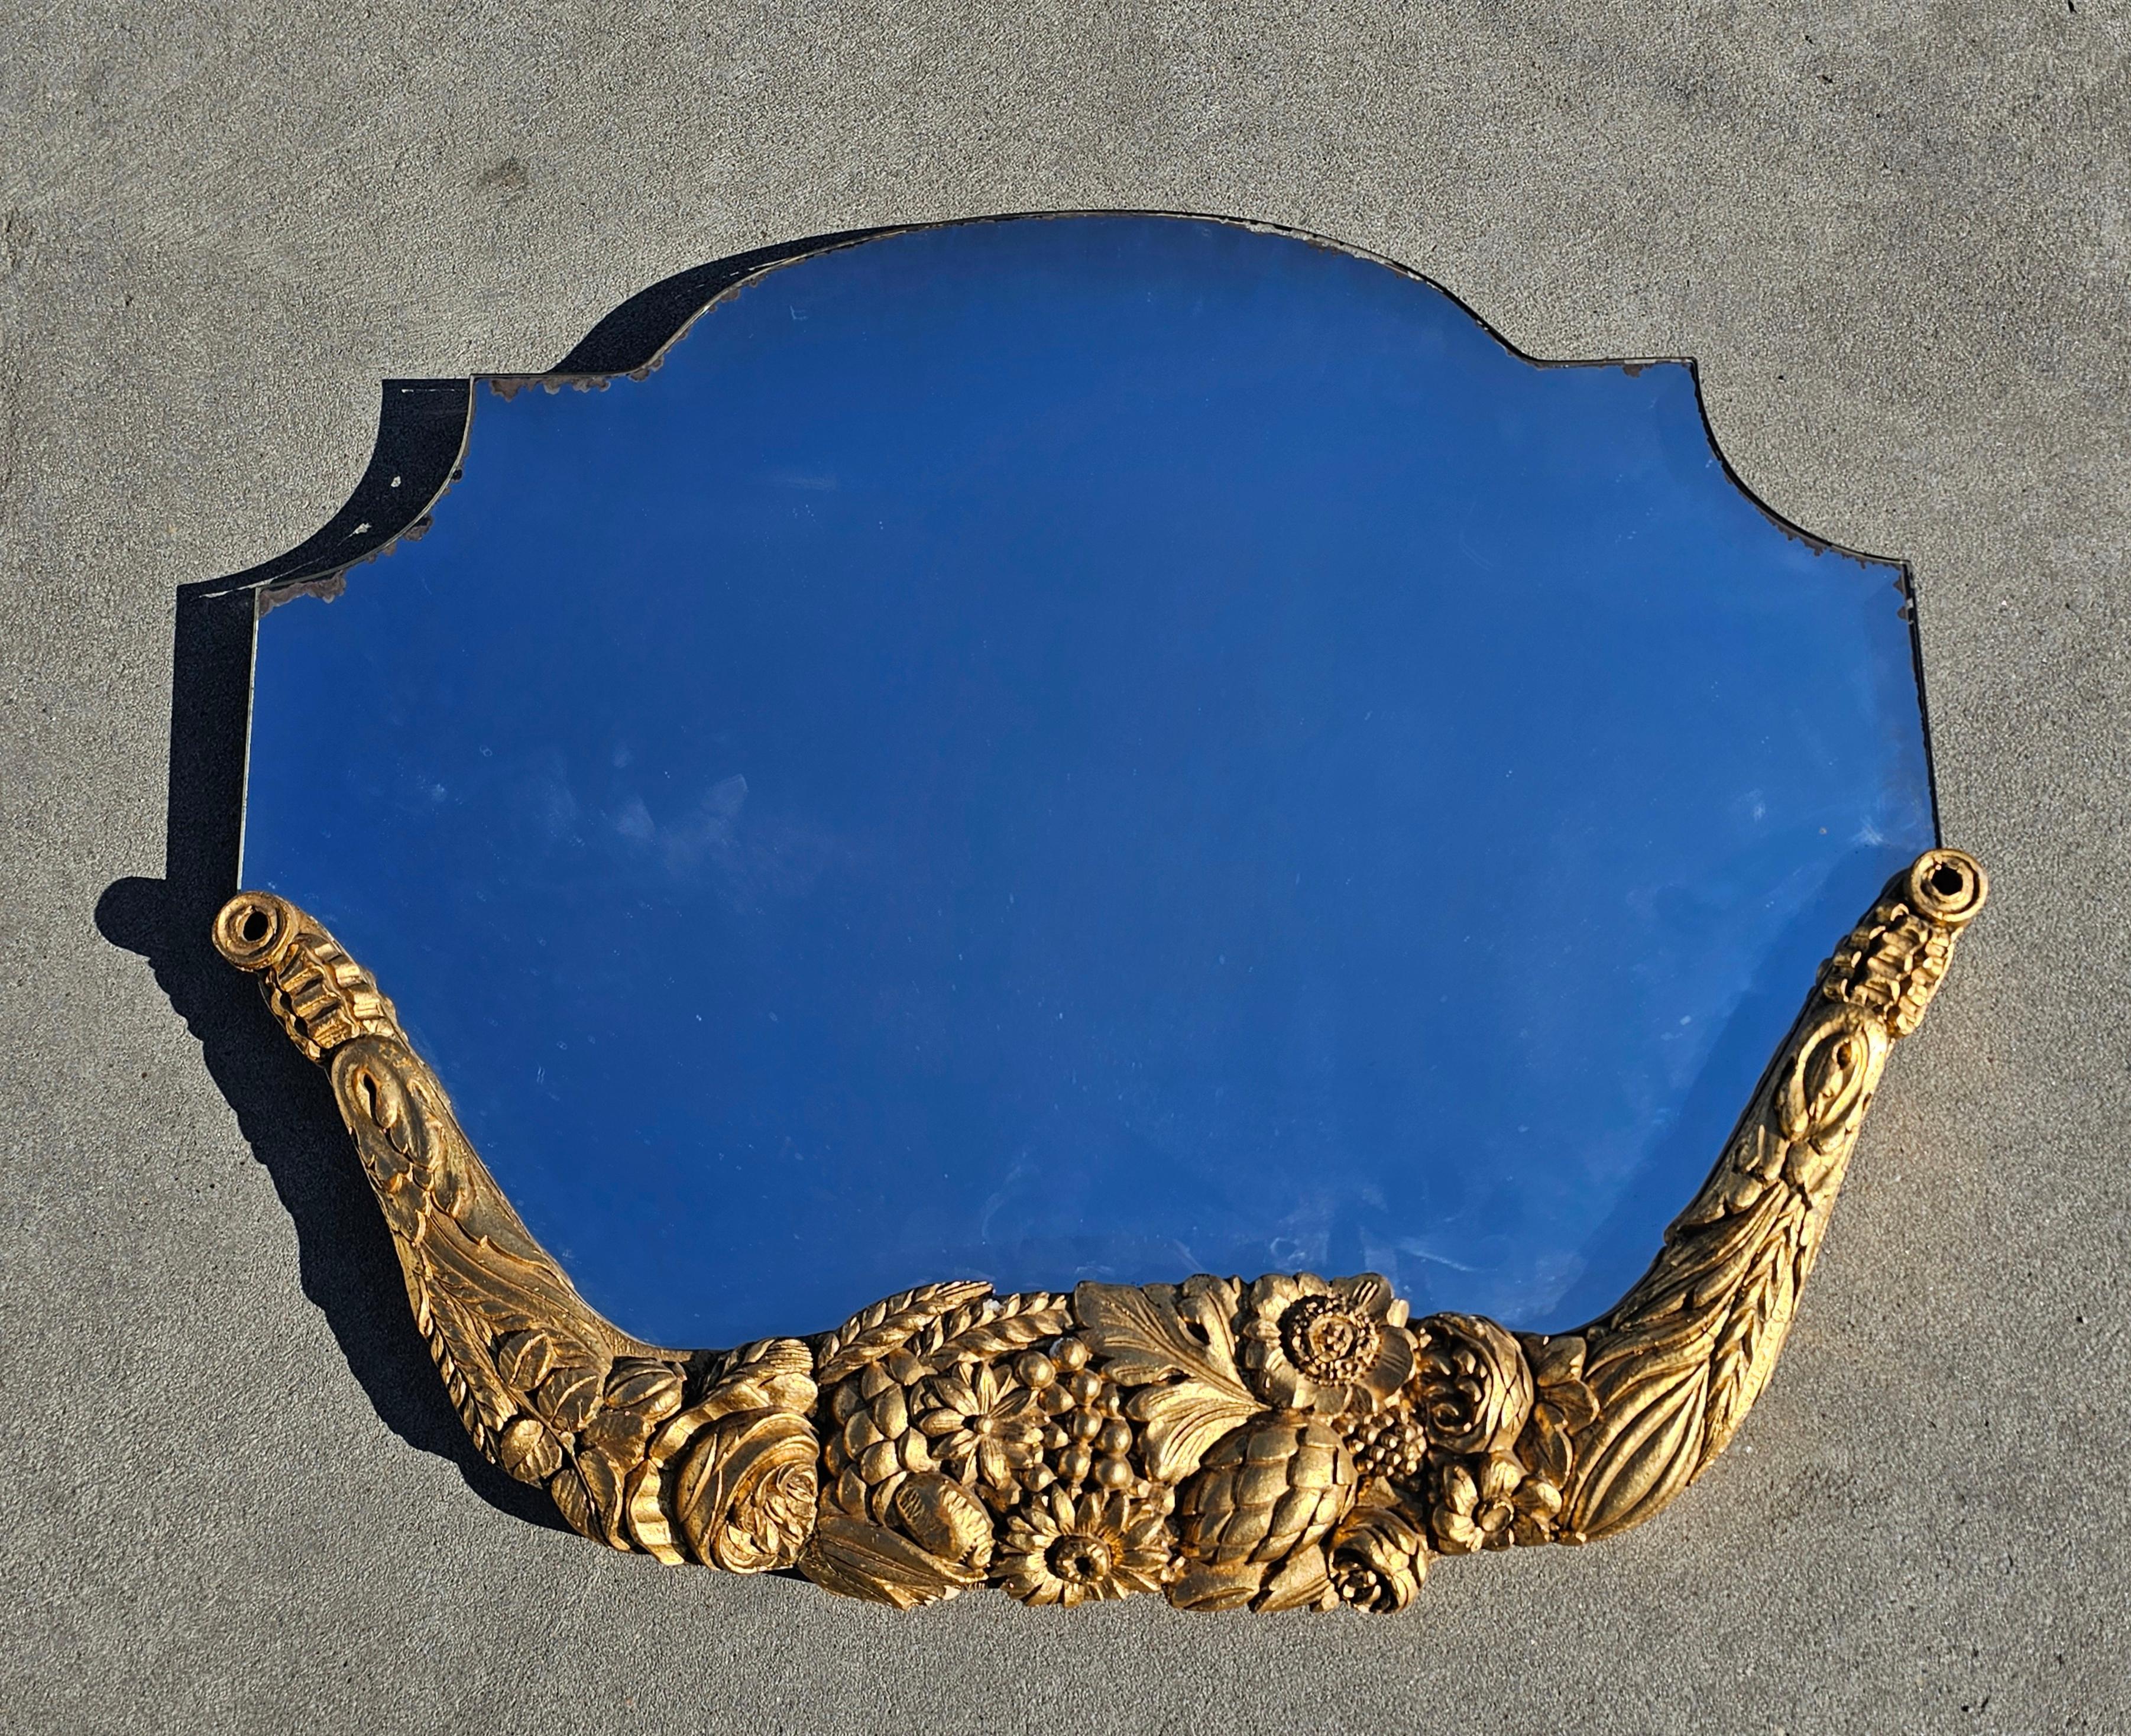 Vous trouverez dans cette liste un miroir mural français ancien extrêmement attrayant, de forme unique, avec un cadre en bois doré sculpté à la main et orné de riches décorations florales. Fabriqué en France à la fin du 19ème siècle. 

Le miroir est